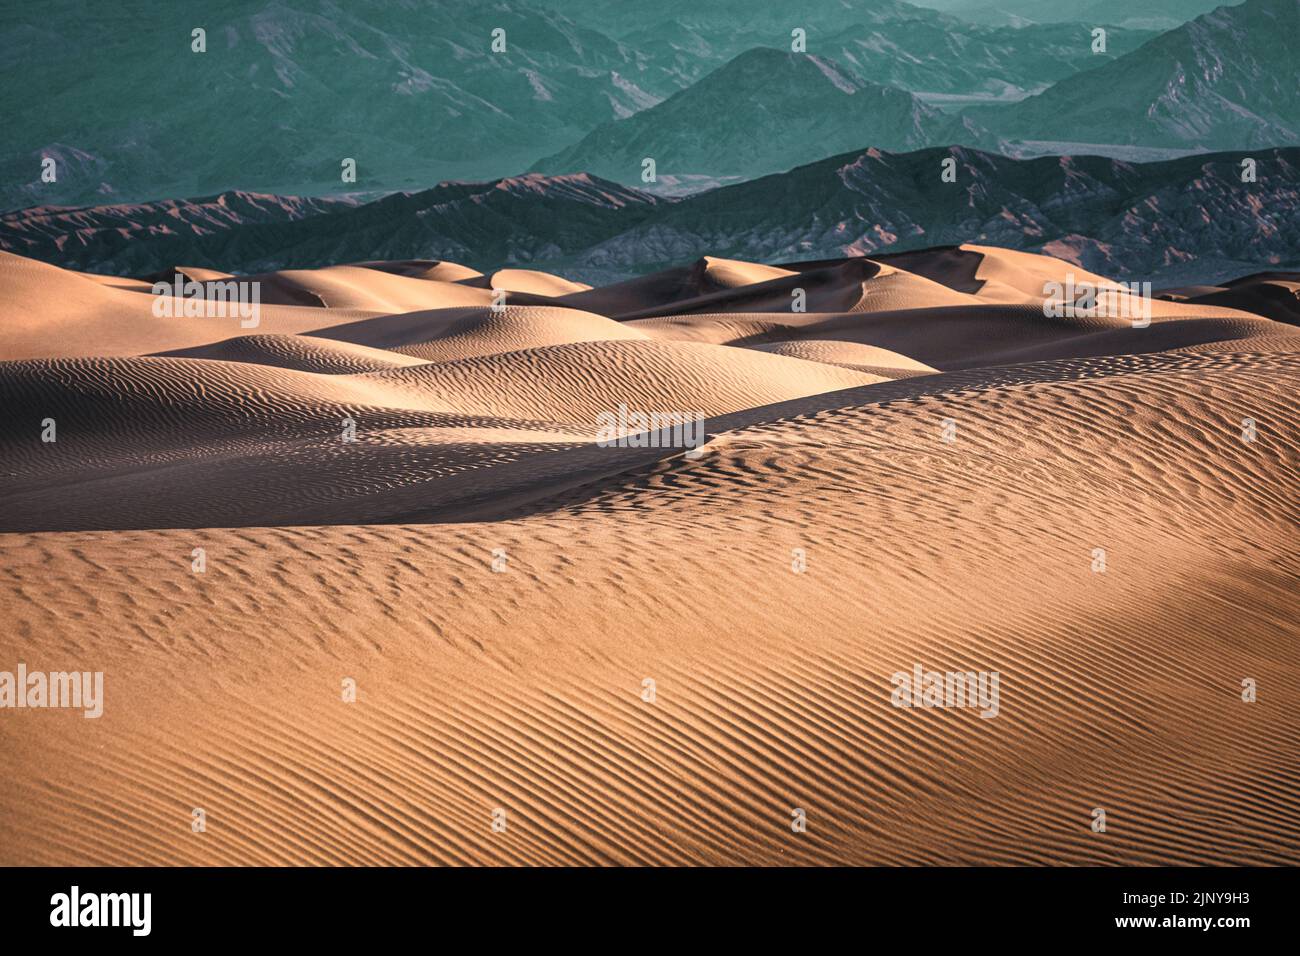 Les dunes de sable de Mesquite Flat s'étendent sur le fond de la vallée, dans le parc national de la Vallée de la mort, en Californie. Banque D'Images